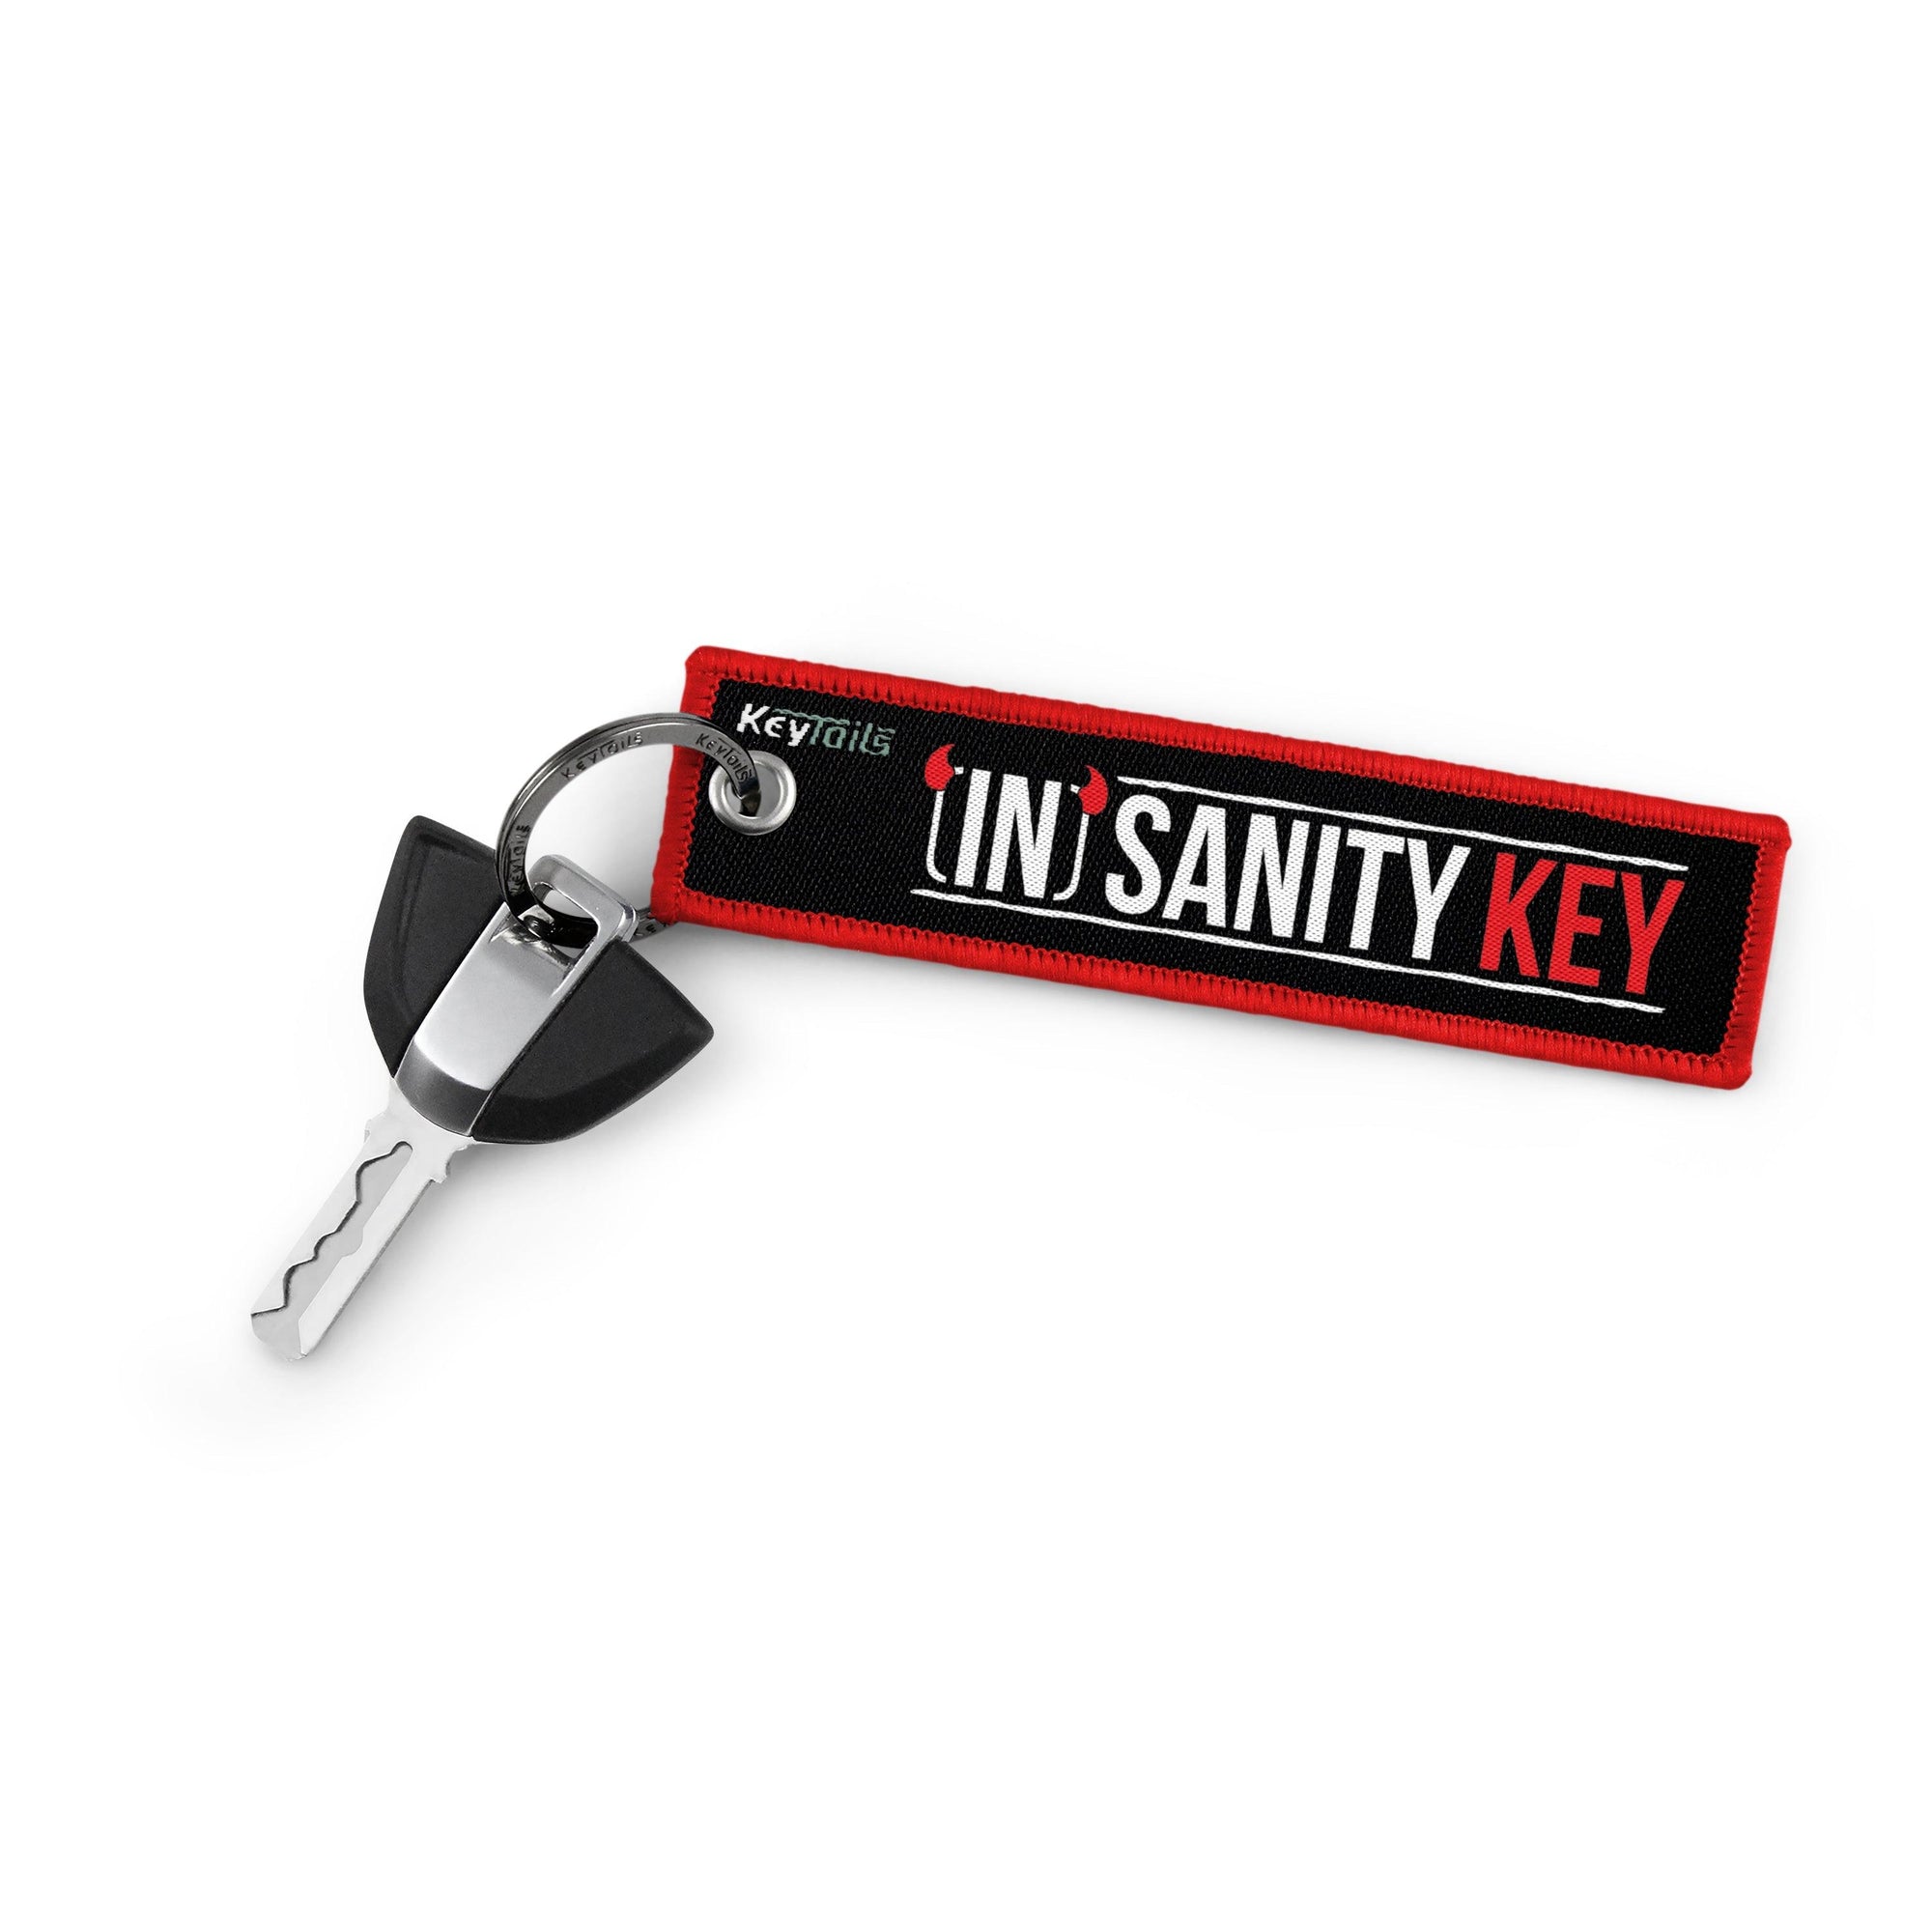 InSanity Key